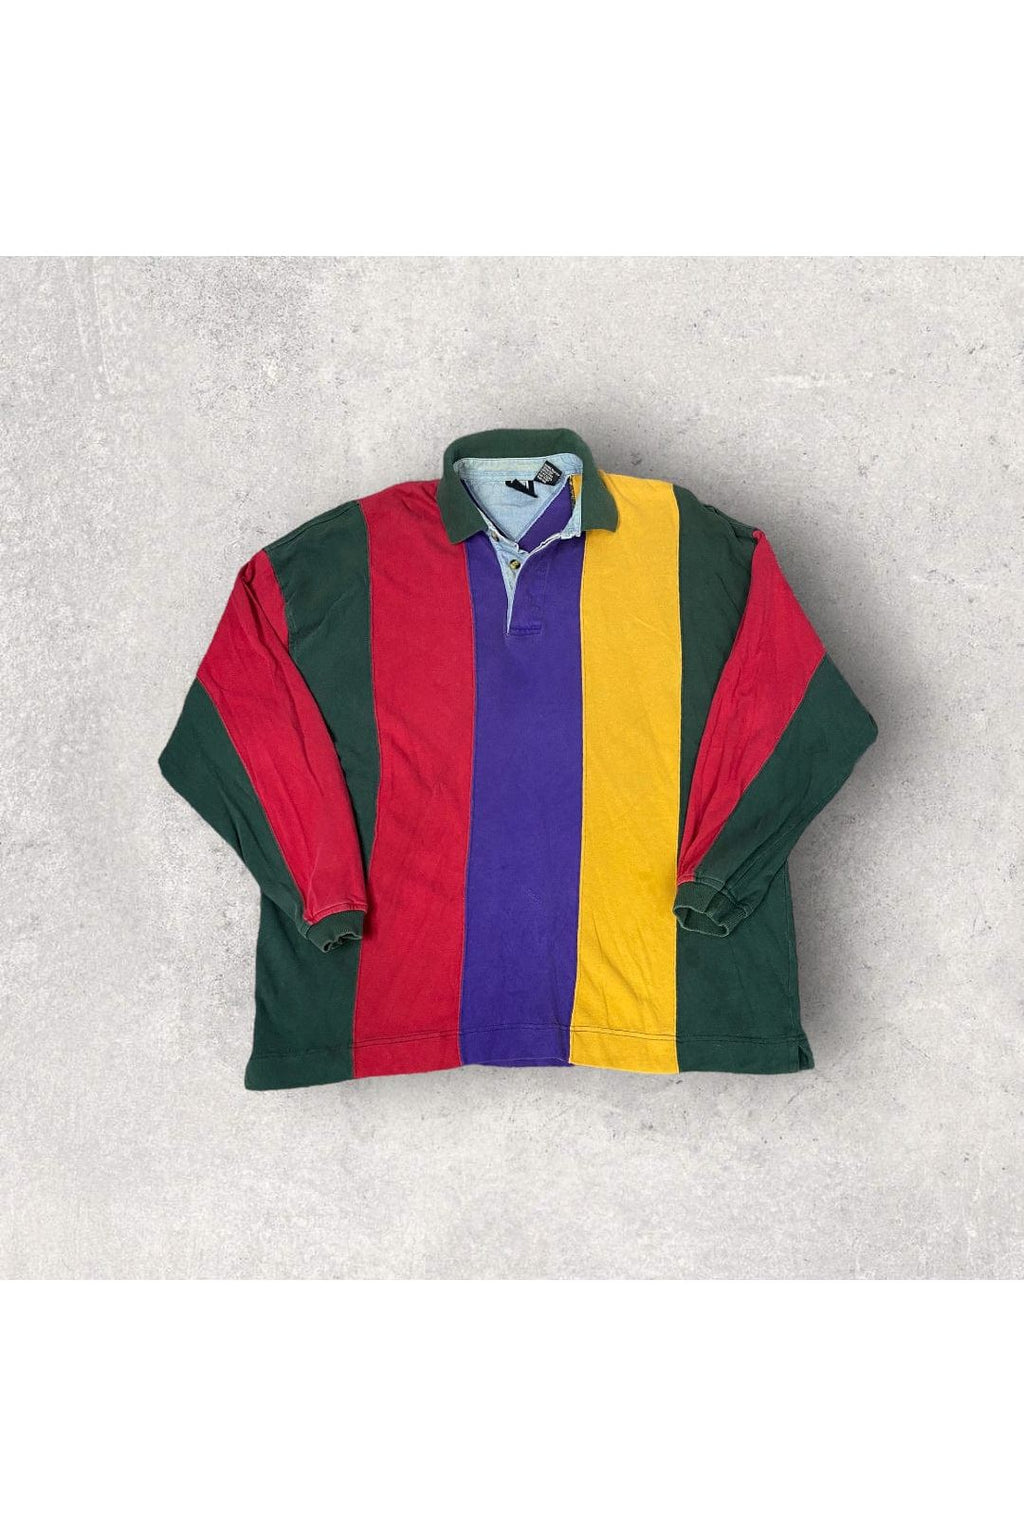 Vintage Jed Wear Rugby Polo- L